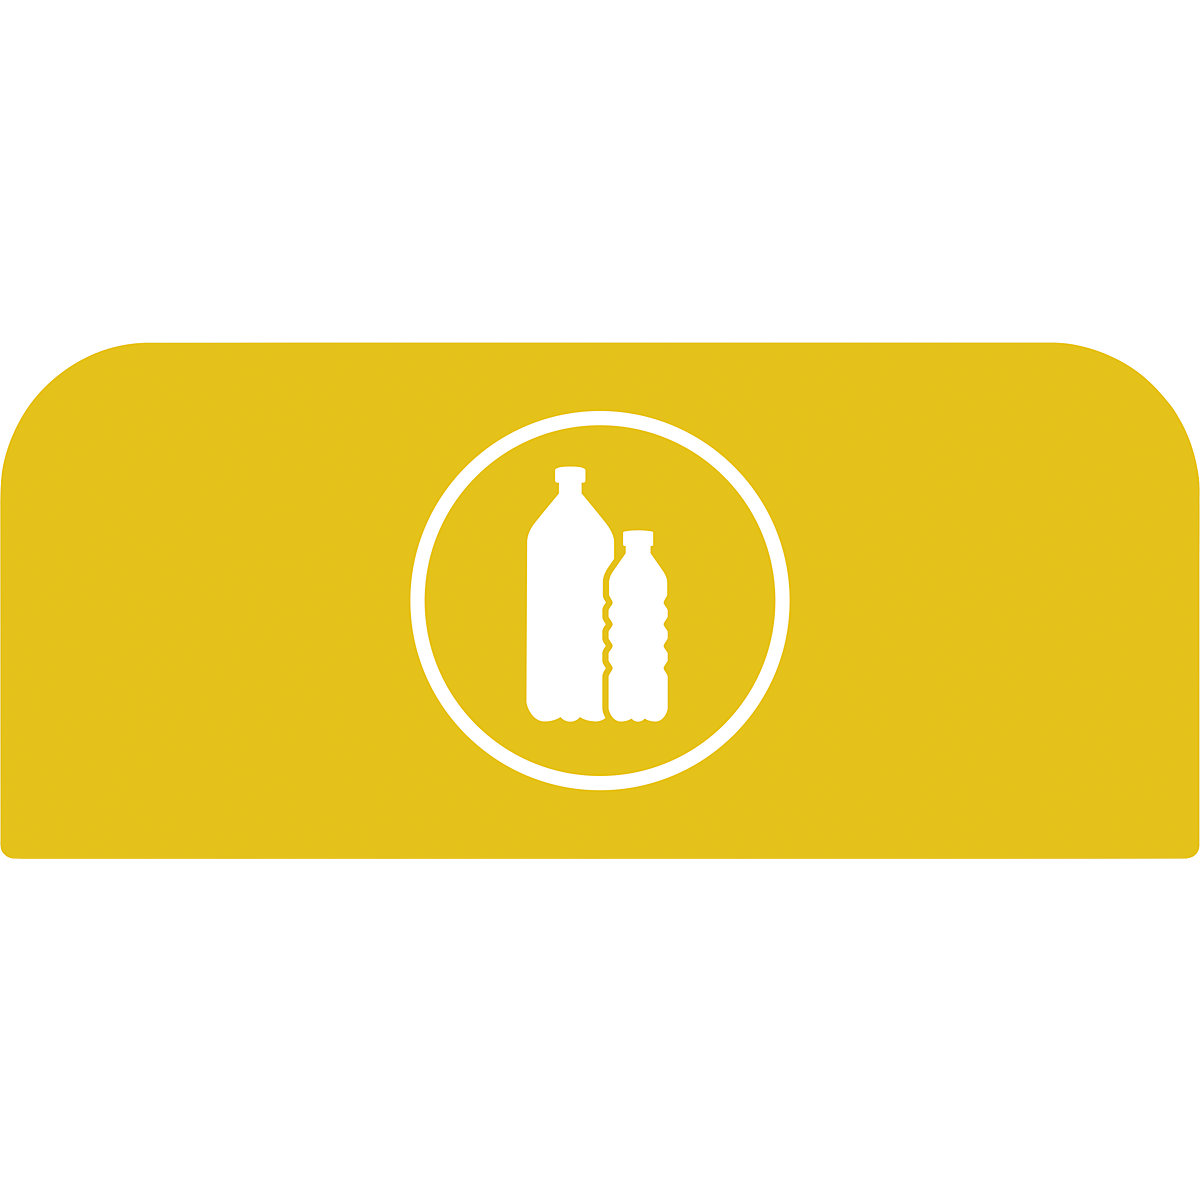 Informatiebord Configure™ – Rubbermaid, voor bakken van 87 liter, geel-2